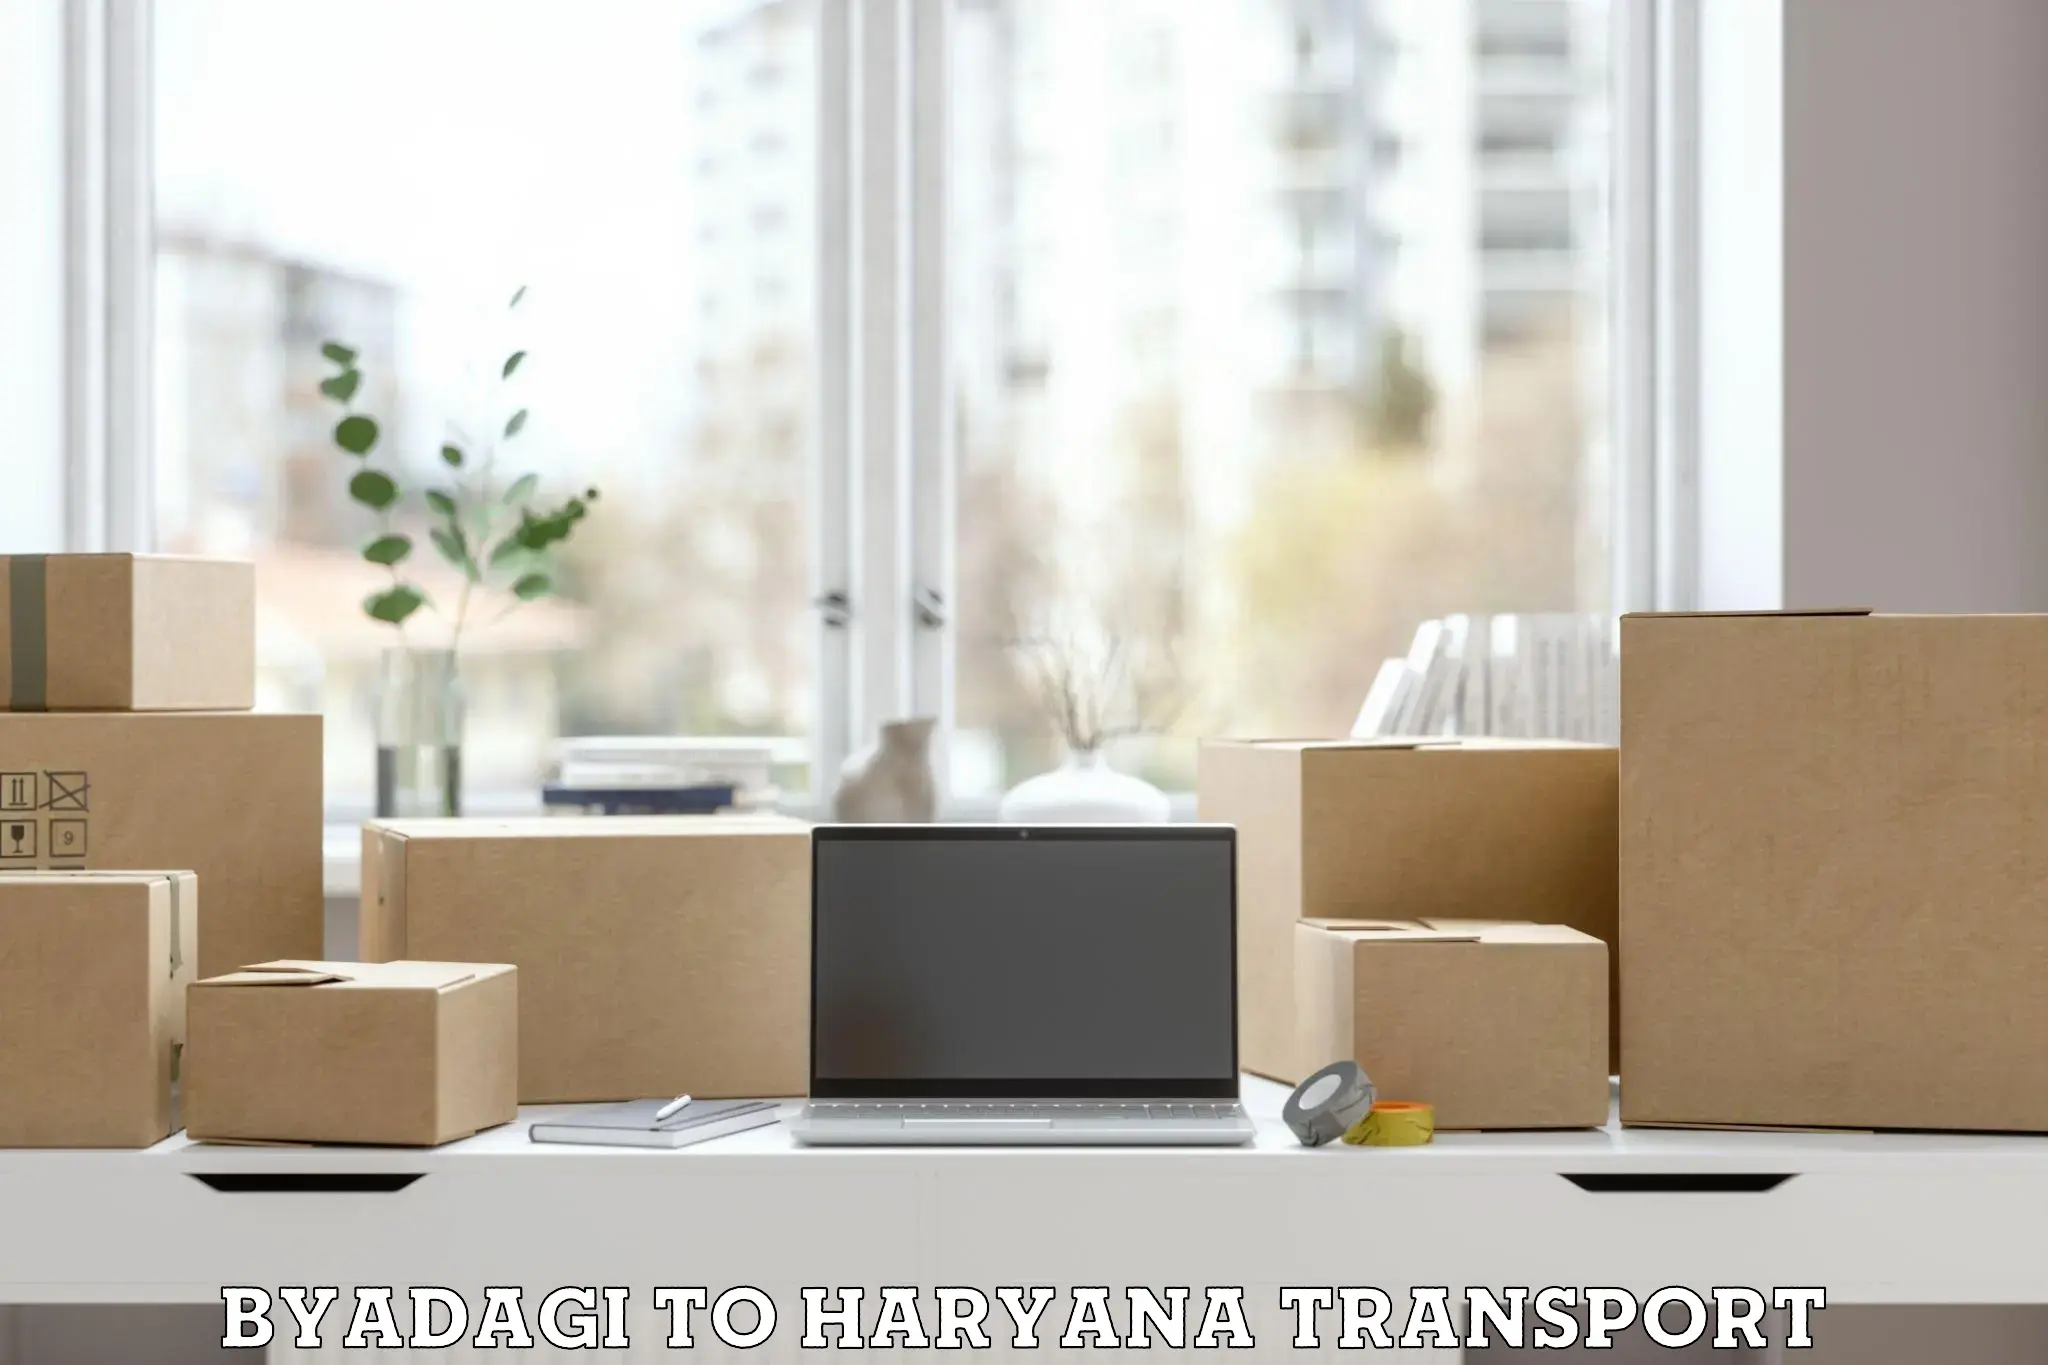 Daily parcel service transport Byadagi to Haryana